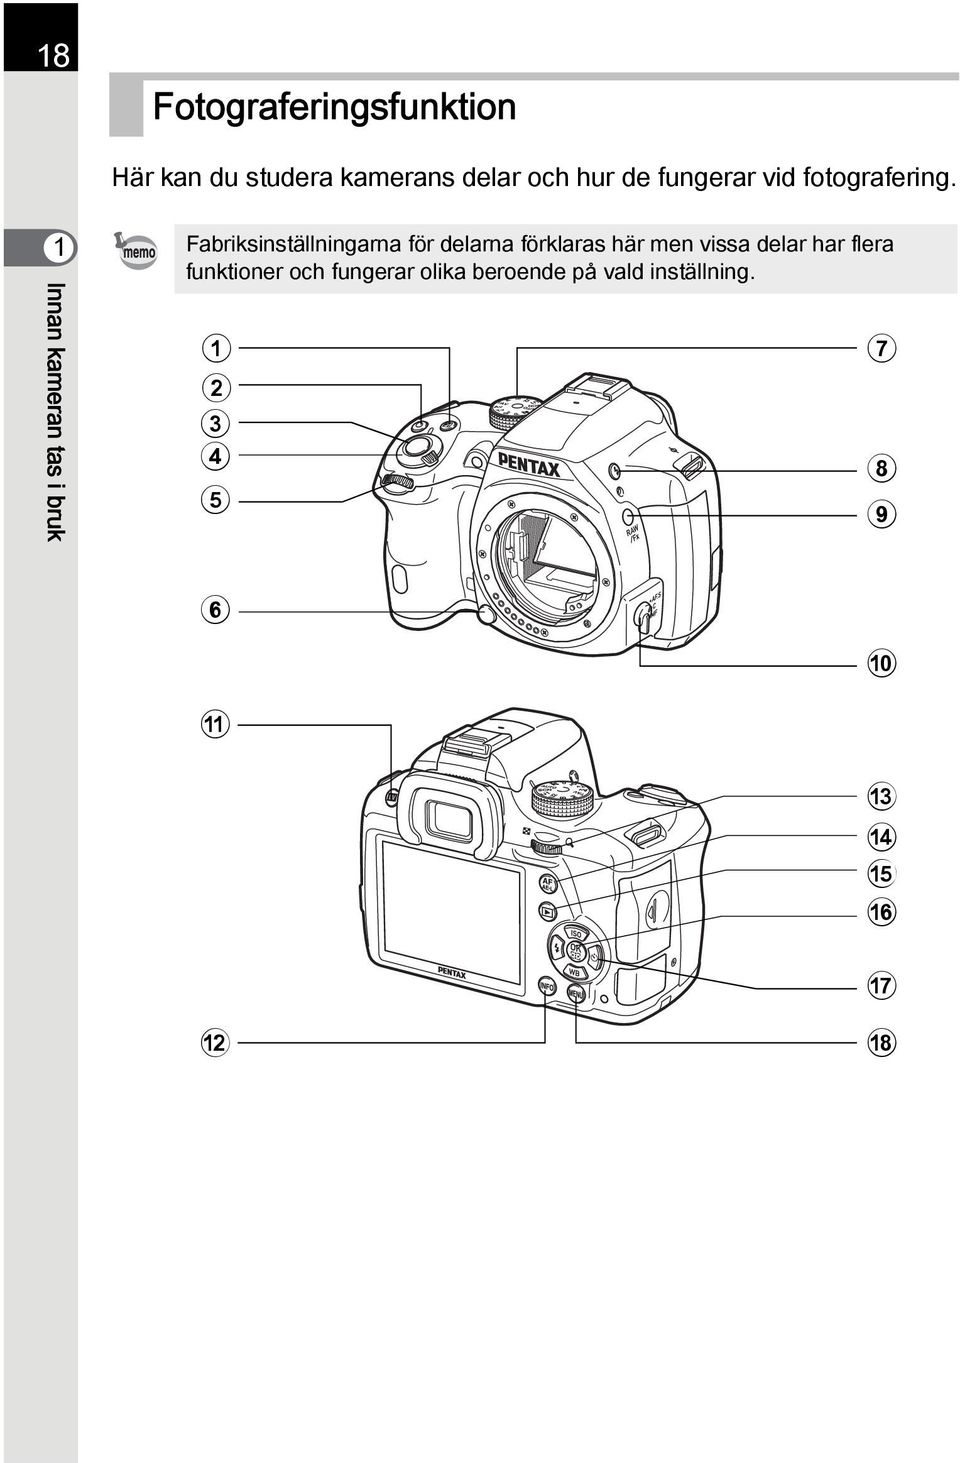 1 Innan kameran tas i bruk Fabriksinställningarna för delarna förklaras